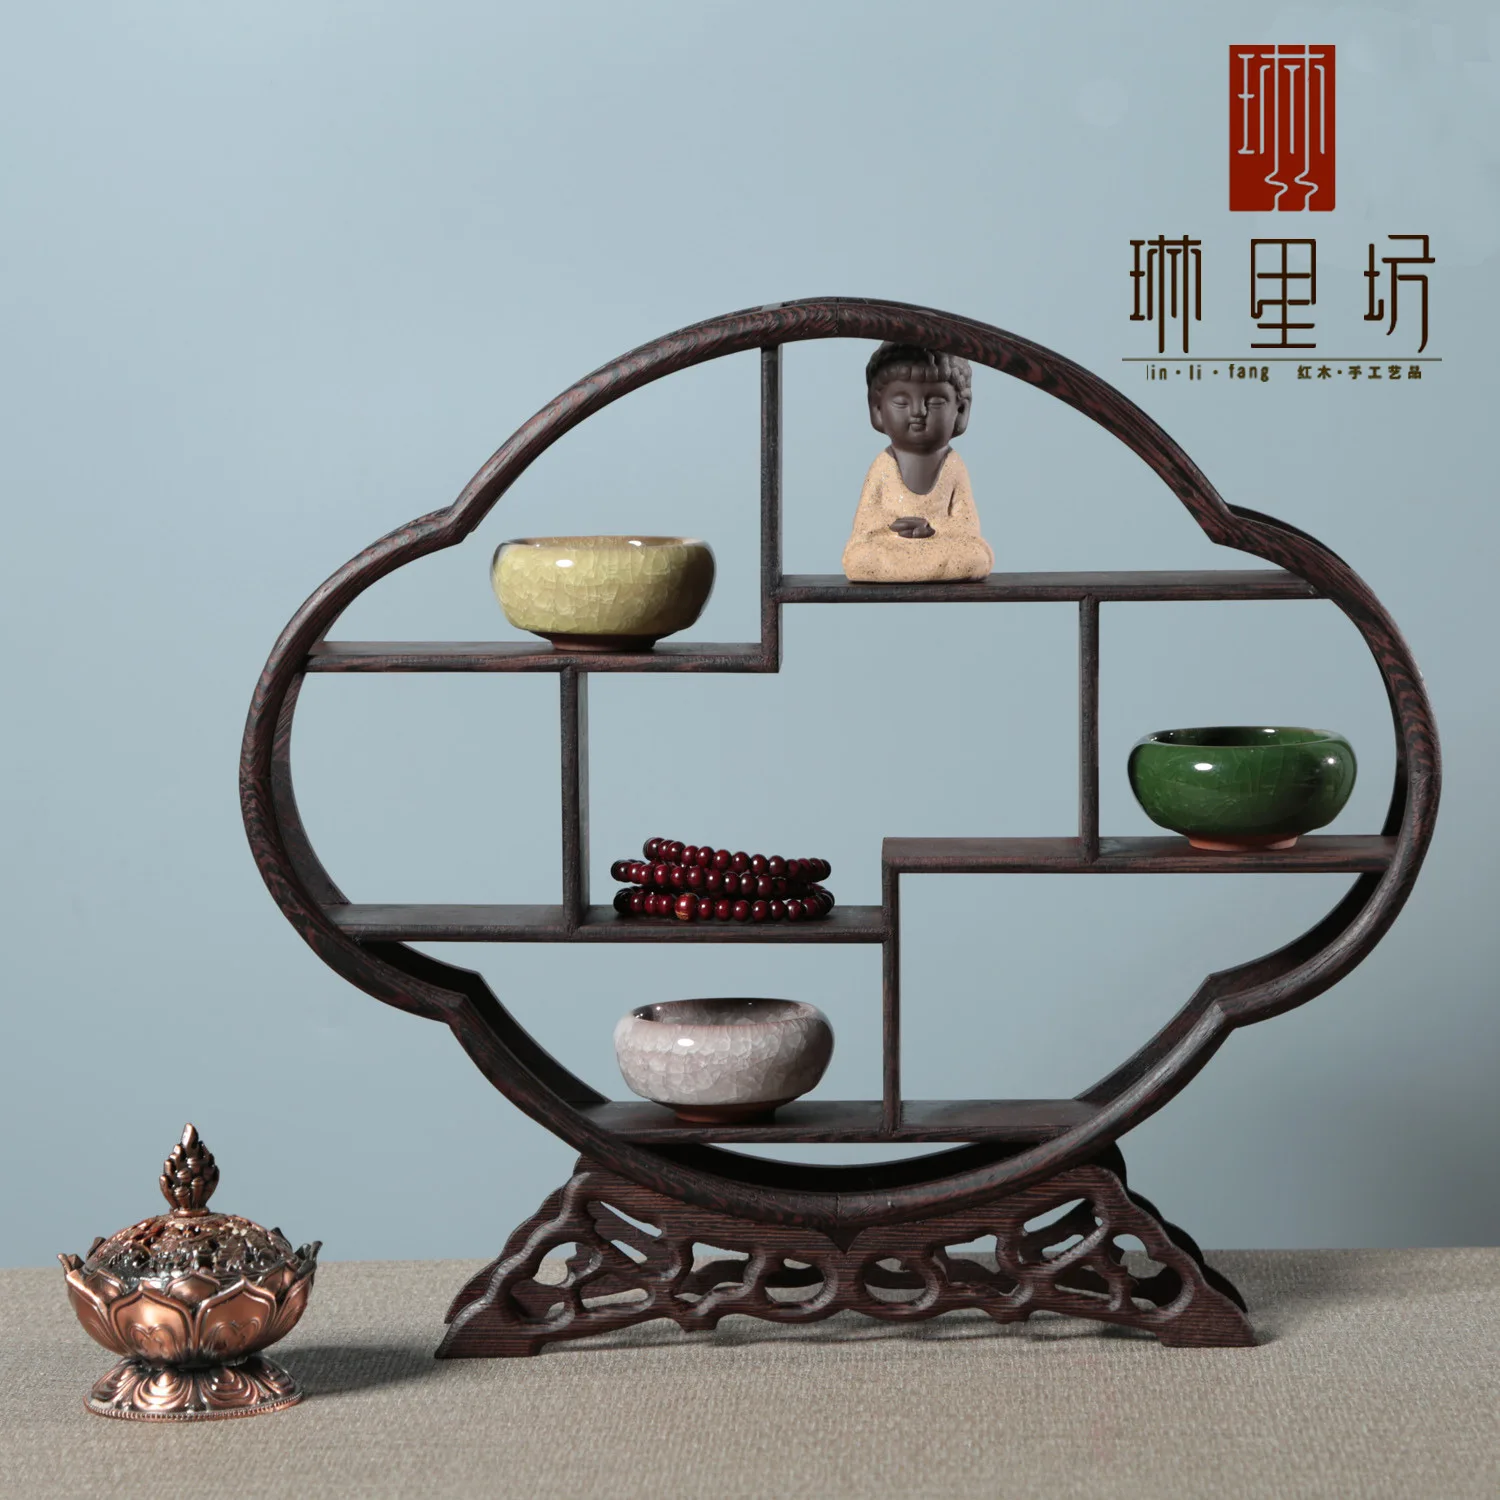 Marco de exhibición de madera de Wenge macizo delicado, estante de madera antiguo, almacenamiento de estilo chino, maceta de arcilla púrpura, adornos para mascotas, decoración del hogar